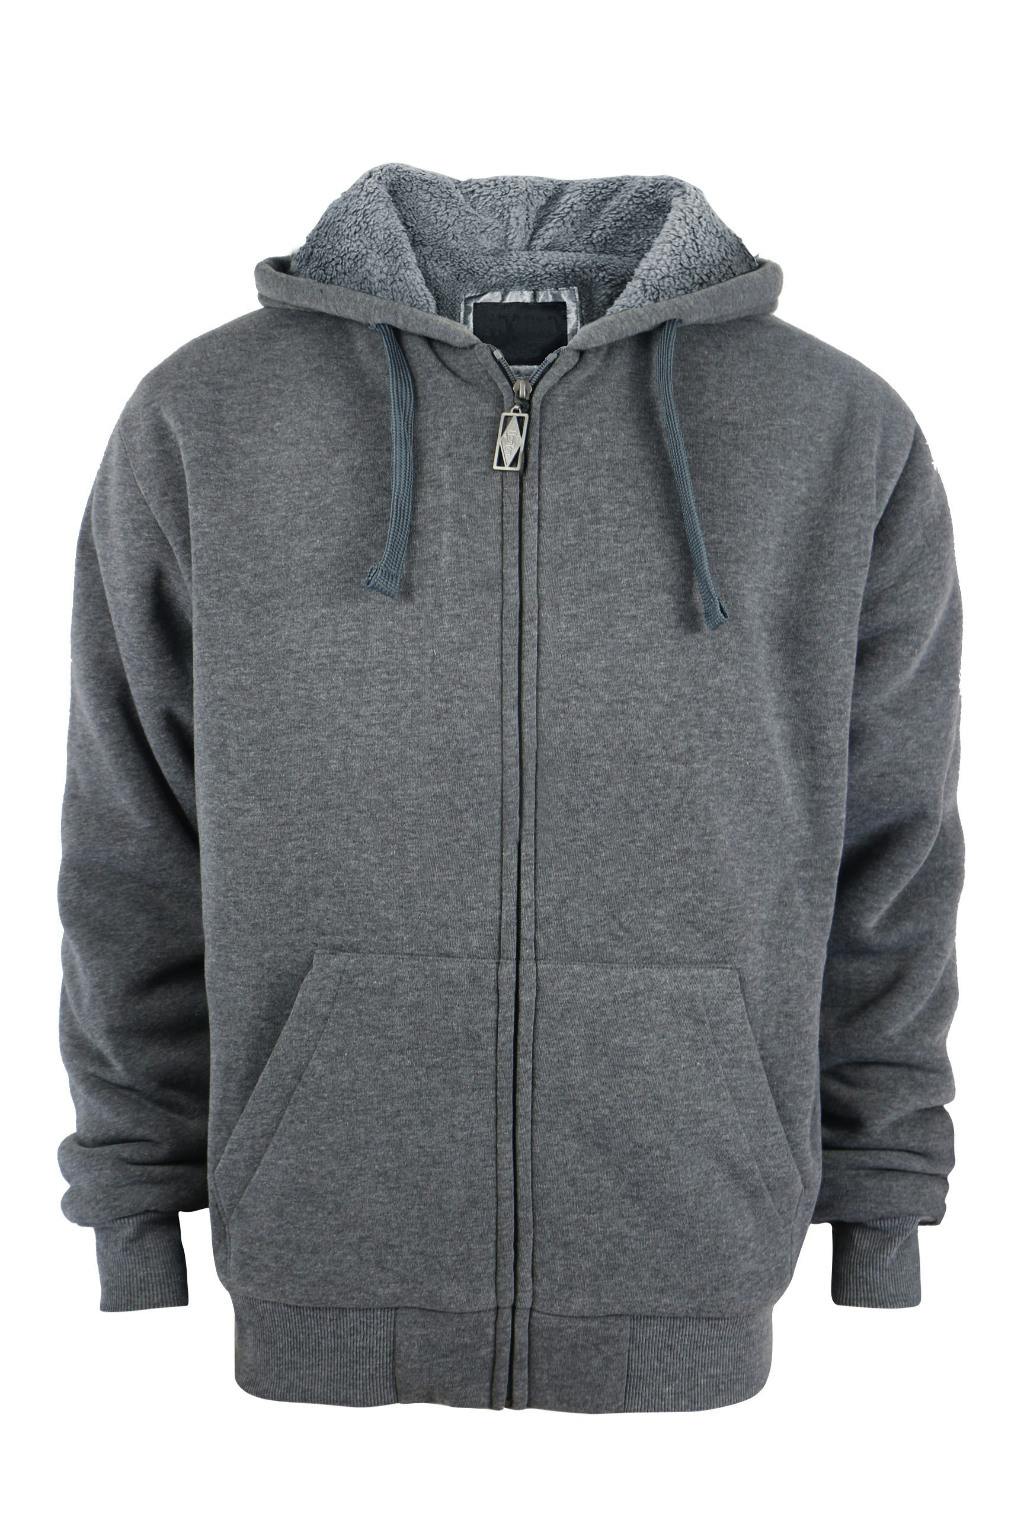 Wholesale Men's Sherpa Lined Zip Hoodie - Dark Grey, S - 2 X (SKU ...